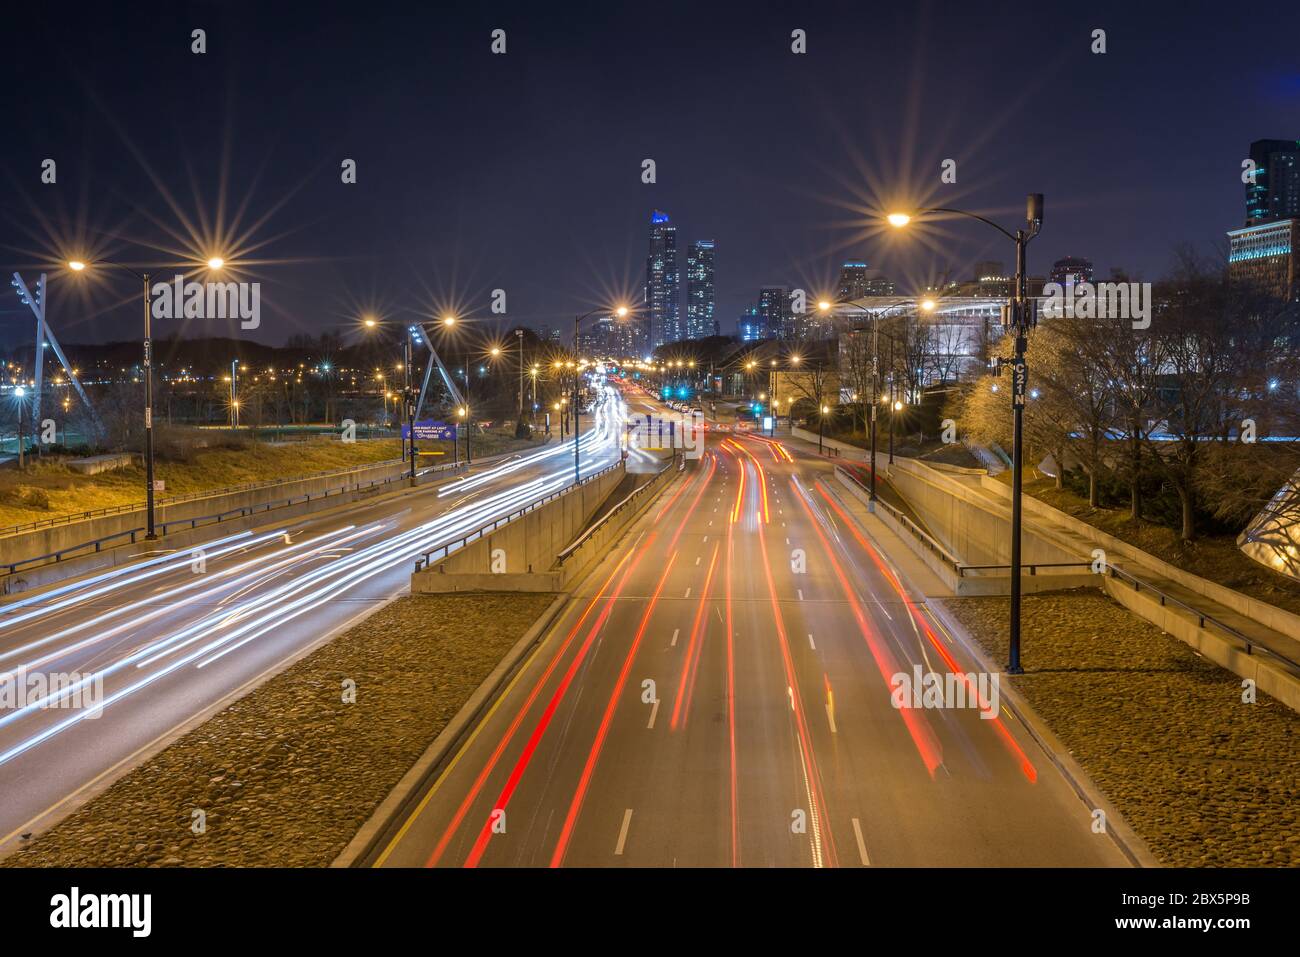 Chicago, USA - 16 décembre 2017 : Columbus Drive de nuit pleine de traînées de lumière de voiture filmées avec effet de flou de mouvement à longue exposition ( pour usage éditorial onl Banque D'Images